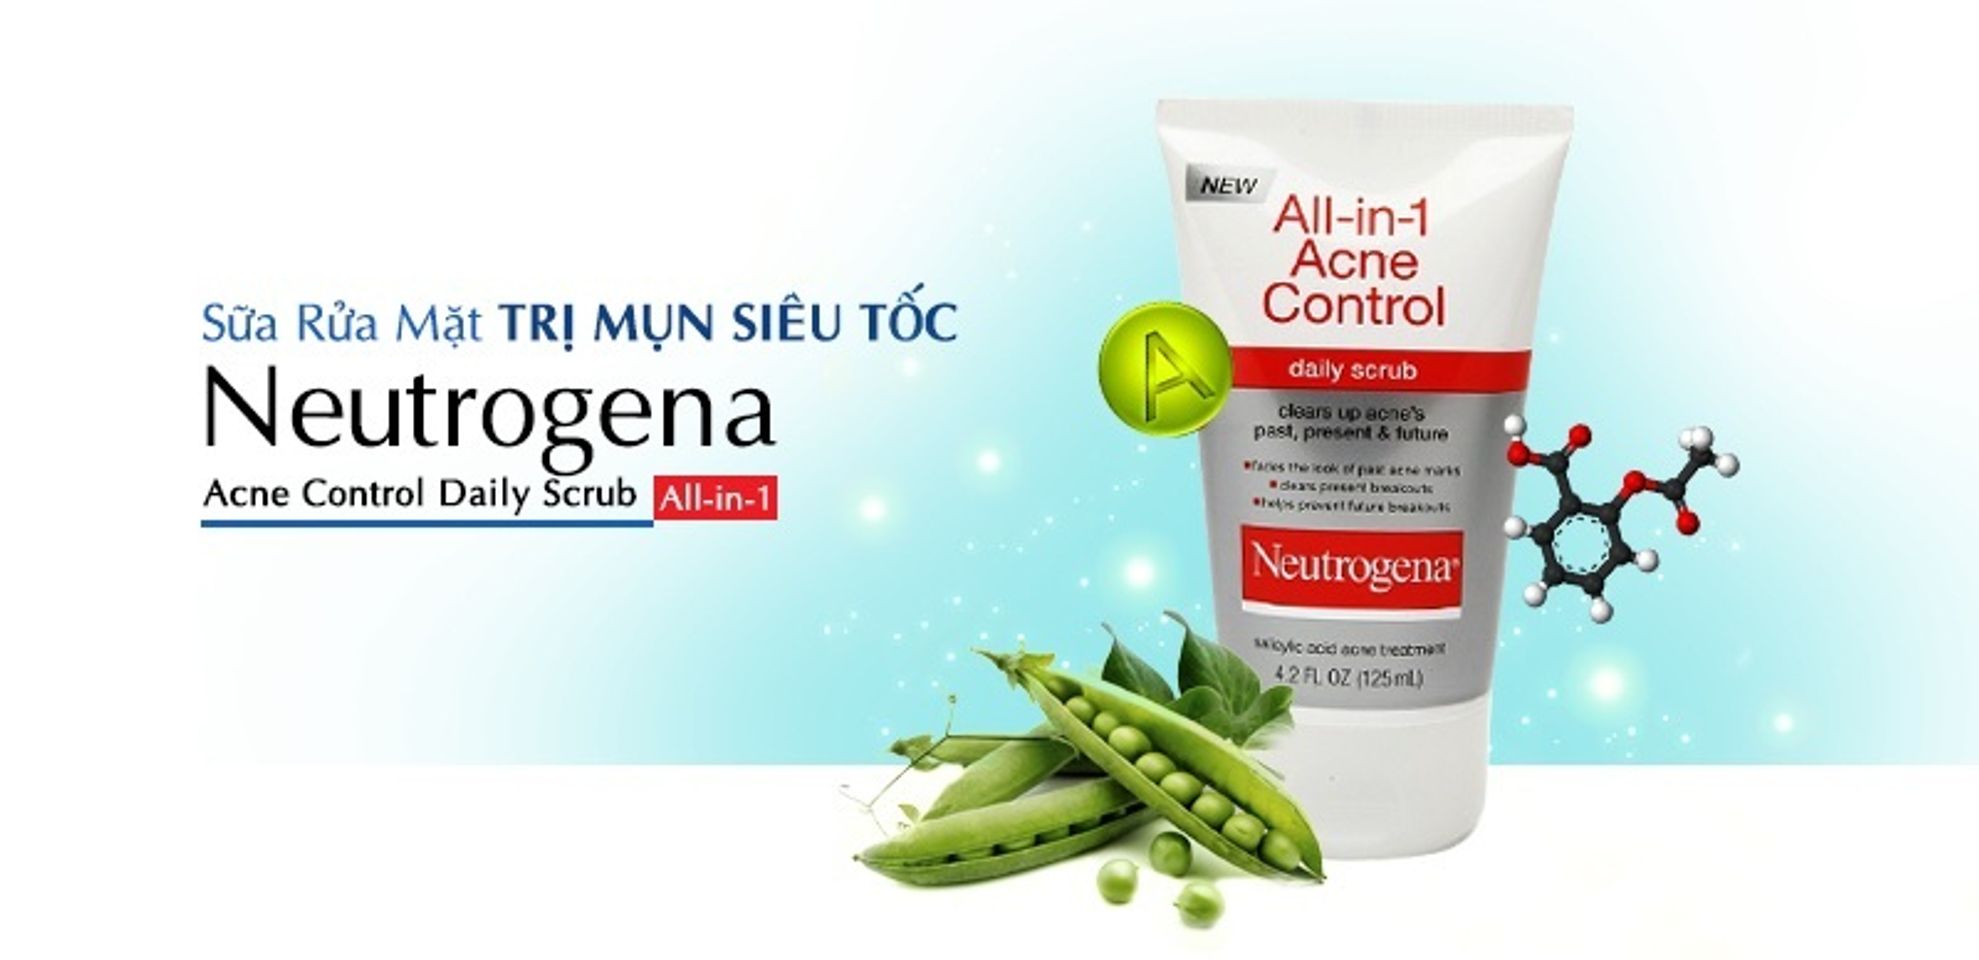 Neutrogena All in 1 Acne Control Daily Scrub chứa các thành phần chiết xuất thiên nhiên